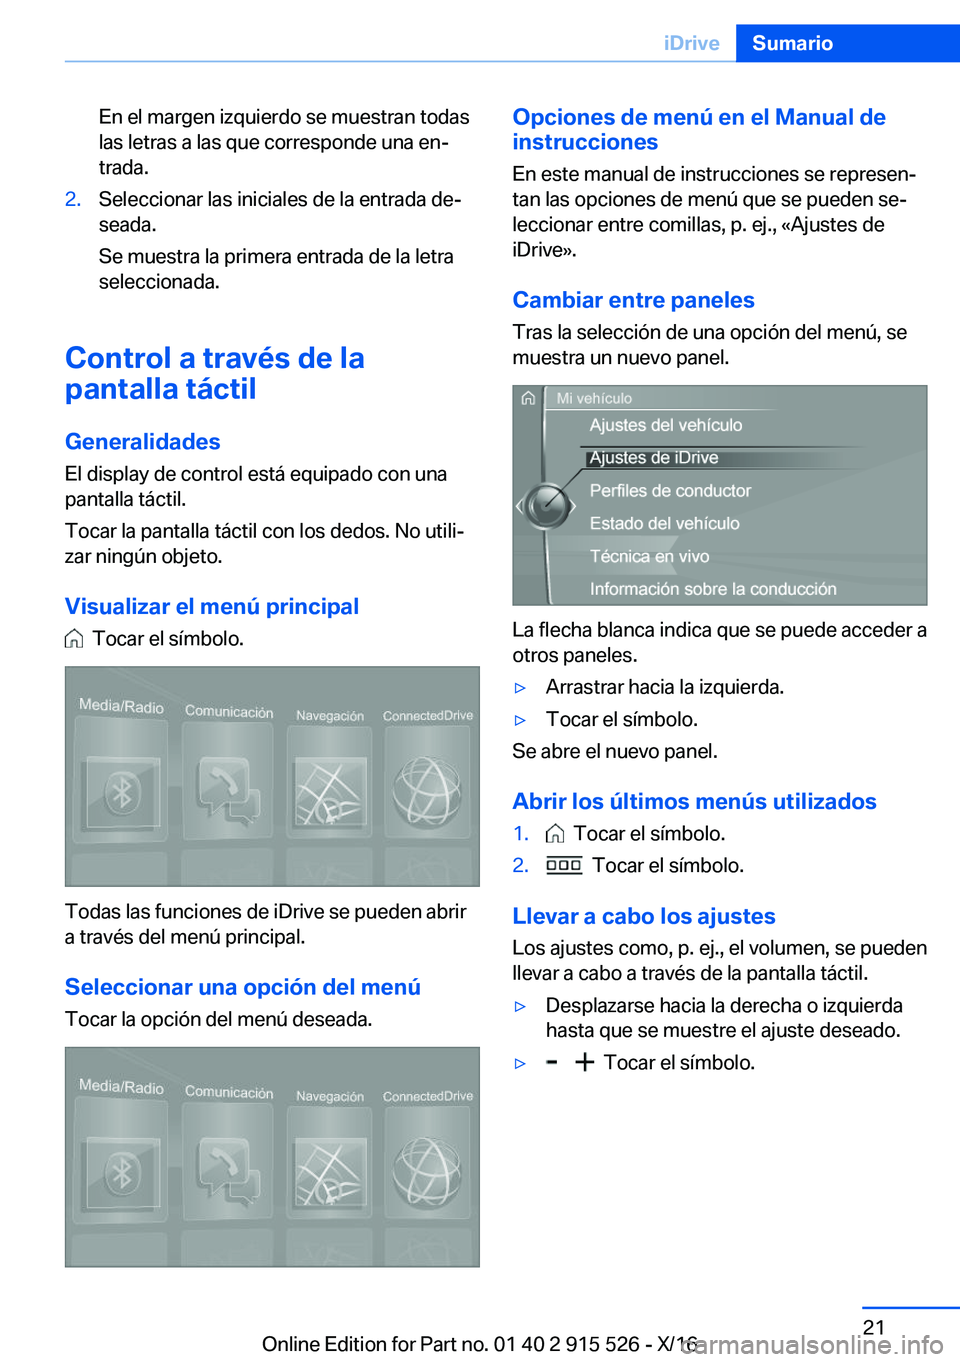 BMW X5 2017  Manuales de Empleo (in Spanish) �E�n� �e�l� �m�a�r�g�e�n� �i�z�q�u�i�e�r�d�o� �s�e� �m�u�e�s�t�r�a�n� �t�o�d�a�s
�l�a�s� �l�e�t�r�a�s� �a� �l�a�s� �q�u�e� �c�o�r�r�e�s�p�o�n�d�e� �u�n�a� �e�nª
�t�r�a�d�a�.�2�.�S�e�l�e�c�c�i�o�n�a�